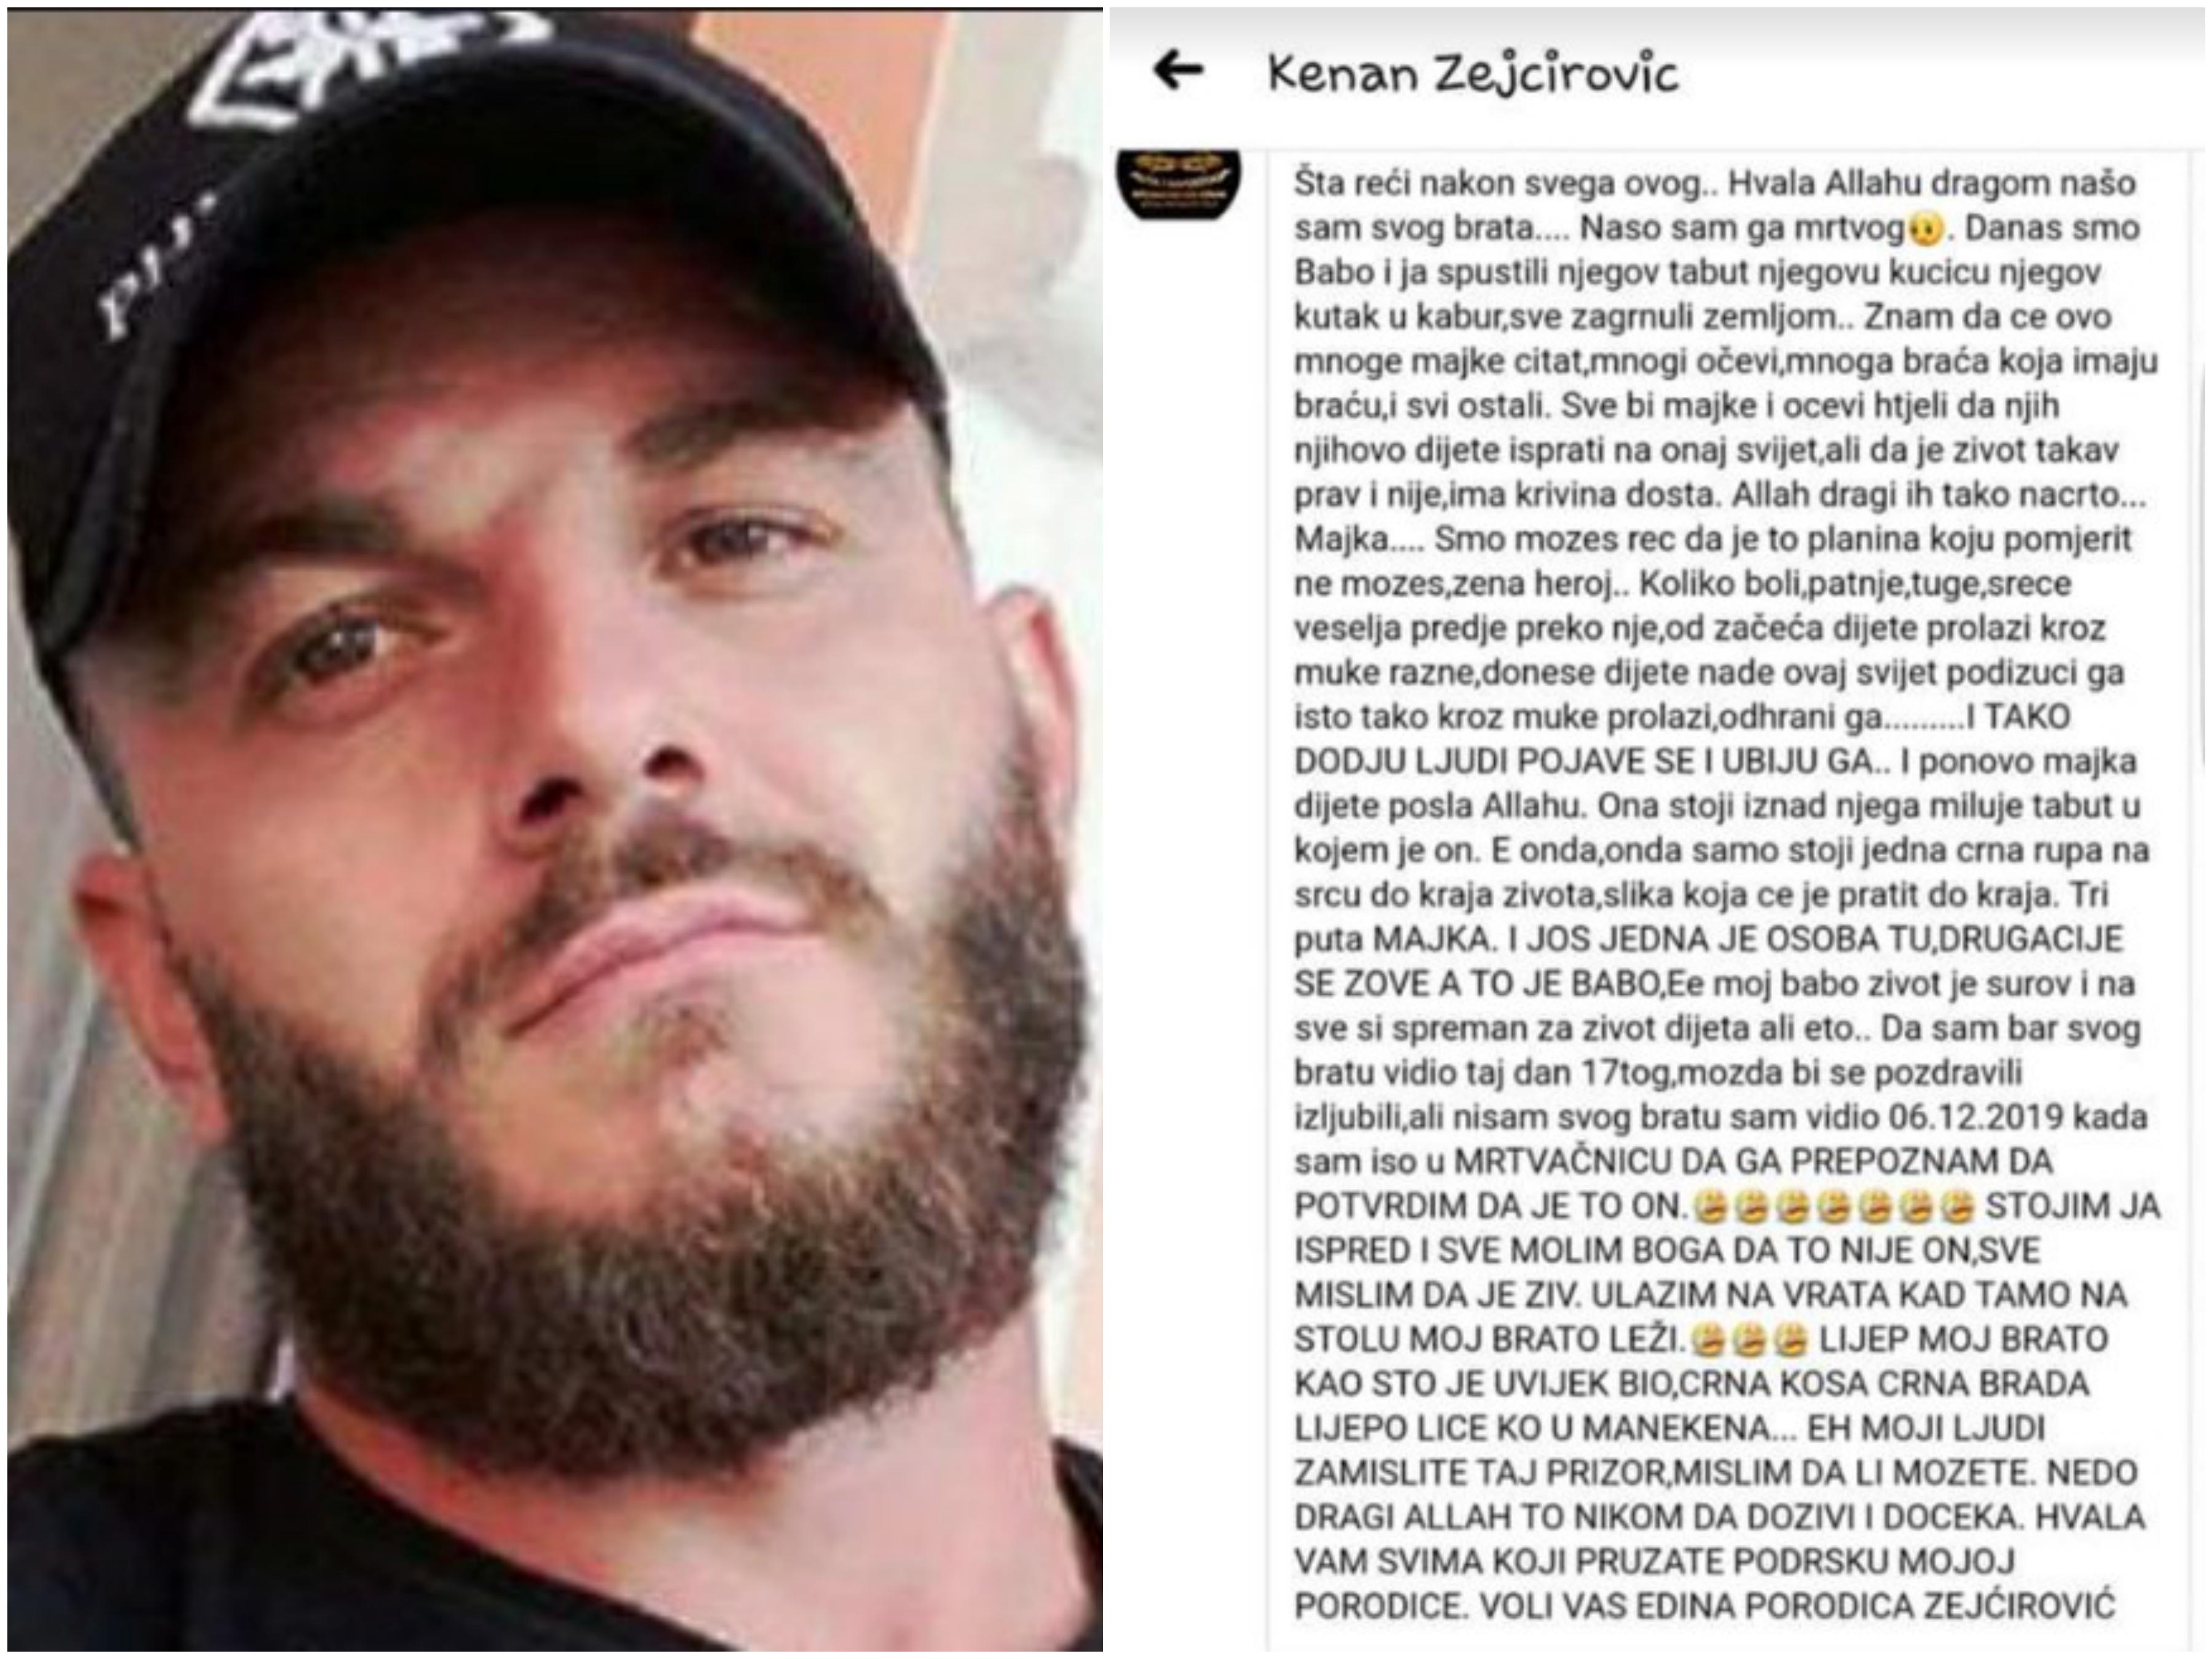 Potresan status brata svirepo ubijenog Edina Zejćirovića: Ulazim na vrata kad tamo, na stolu, moj brato leži...